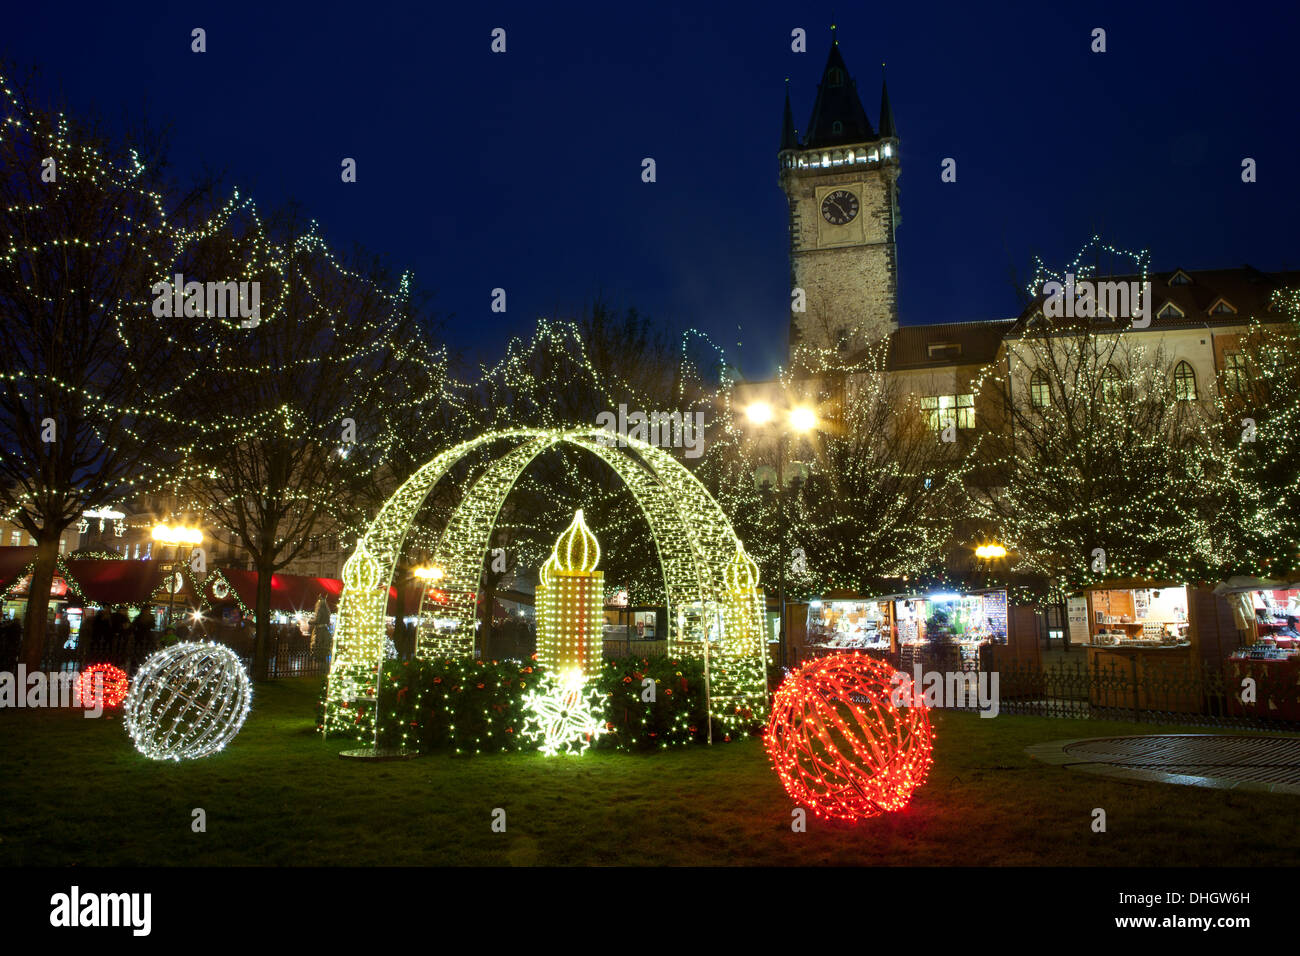 Weihnachtliche Stimmung auf dem Altstädter Ring, Prag, Tschechien Stockfoto